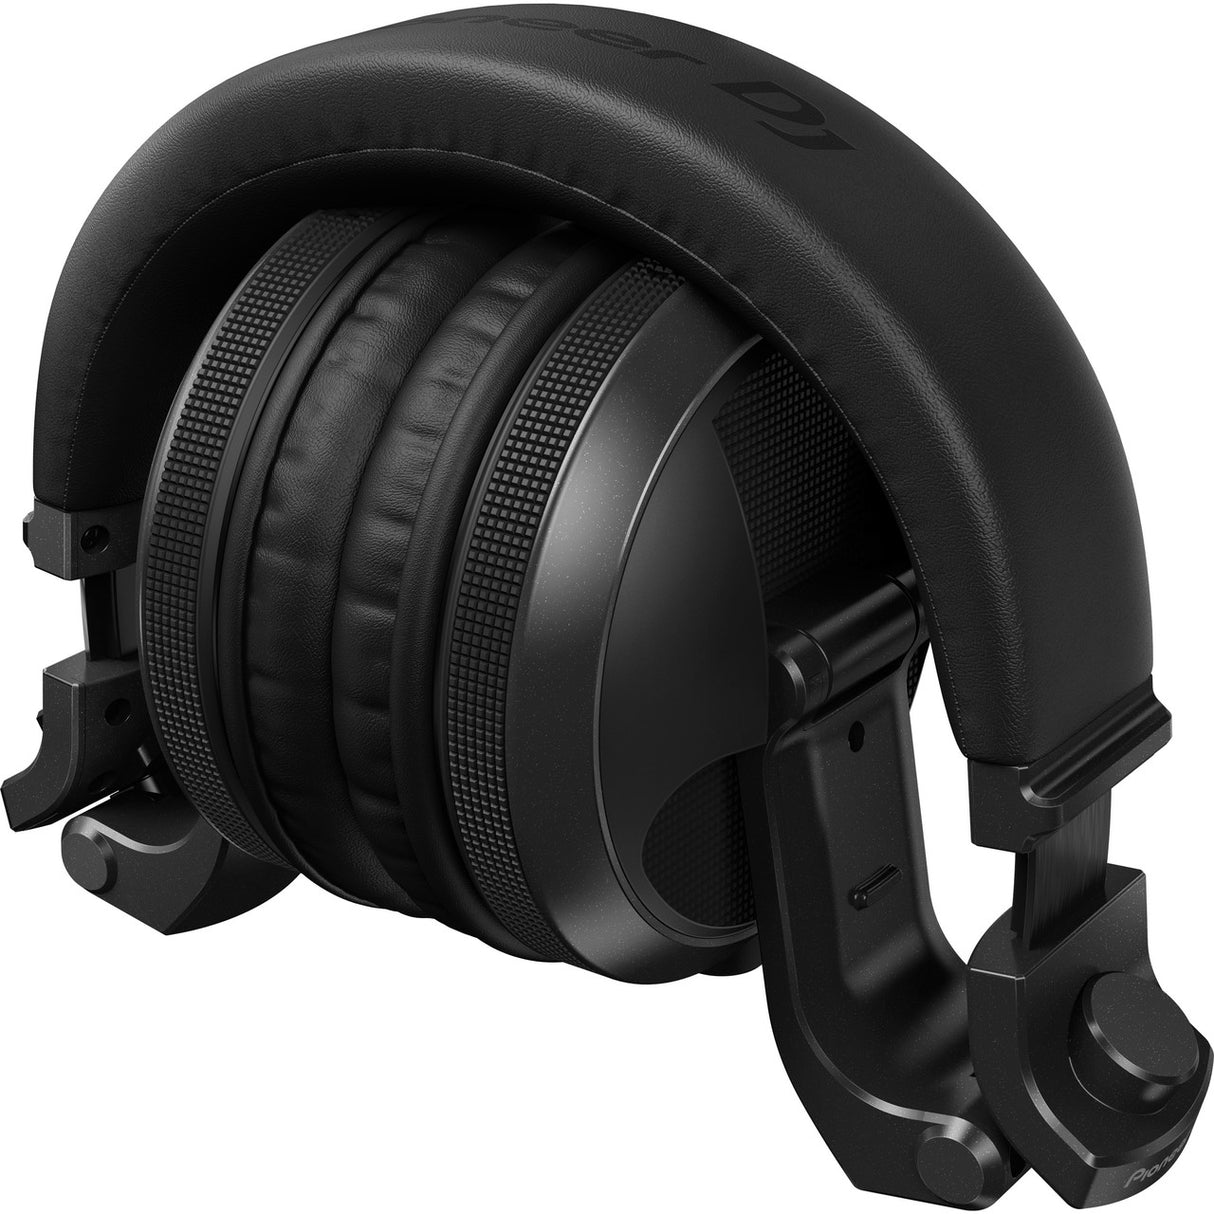 Pioneer DJ HDJ-X5BT-K | Over-Ear Bluetooth Wireless DJ Headphone, Black